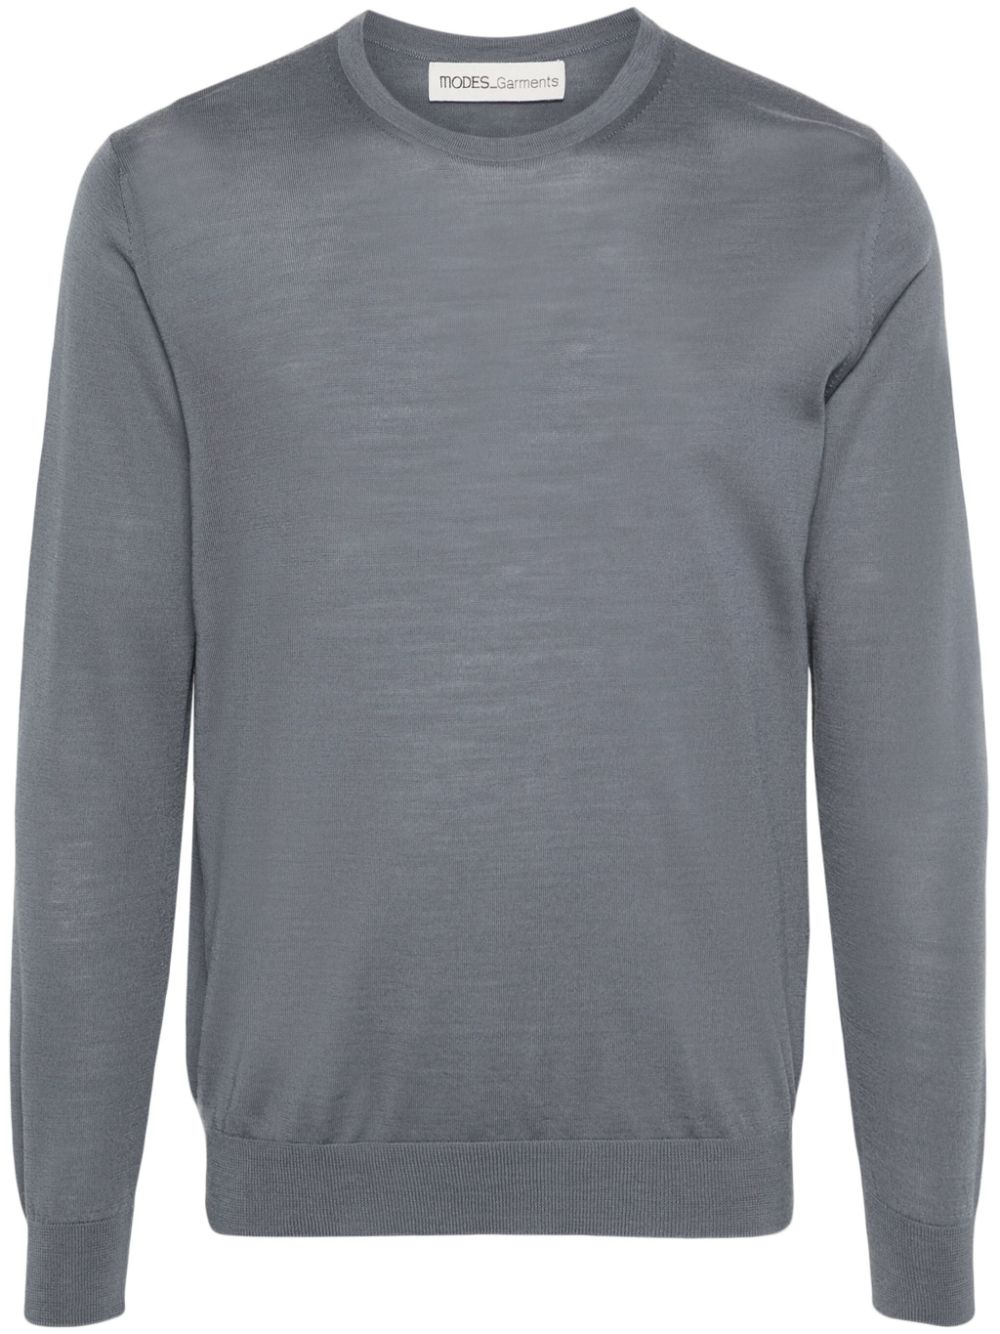 Modes Garments Fine-knit Merino Wool Jumper In Gray